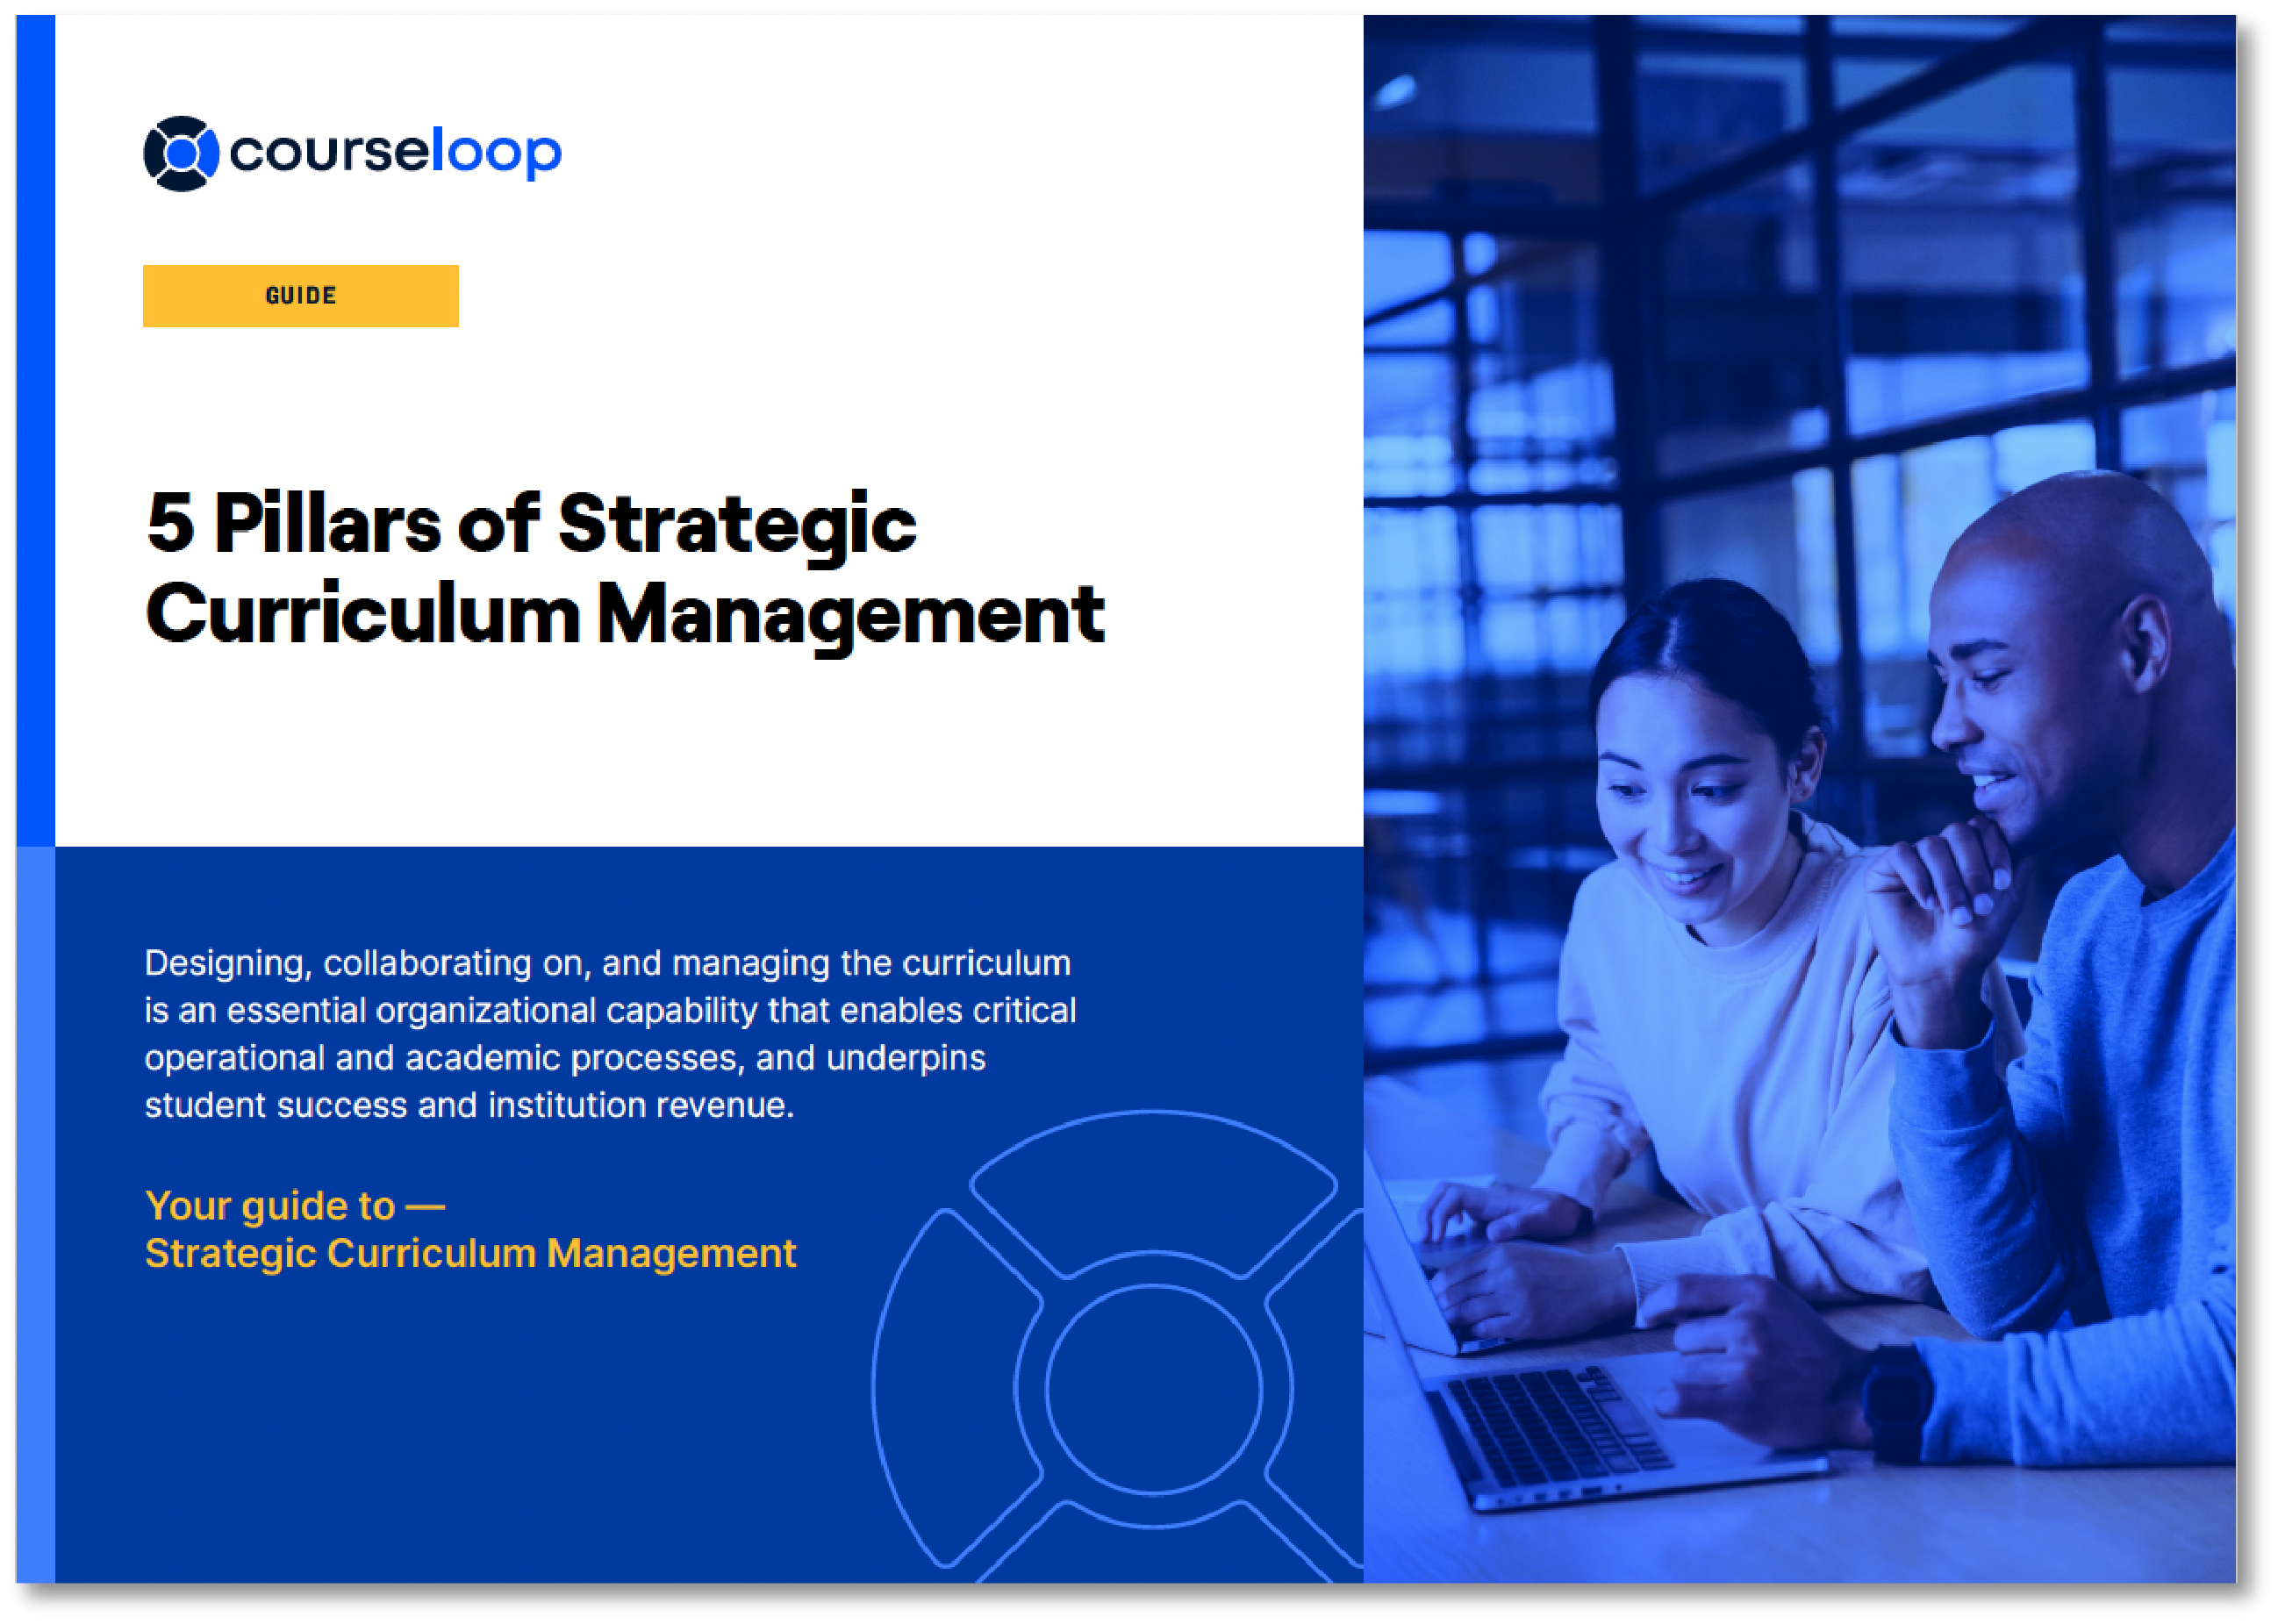 Guide-5 Pillars of Strategic Curriculum Management_cover